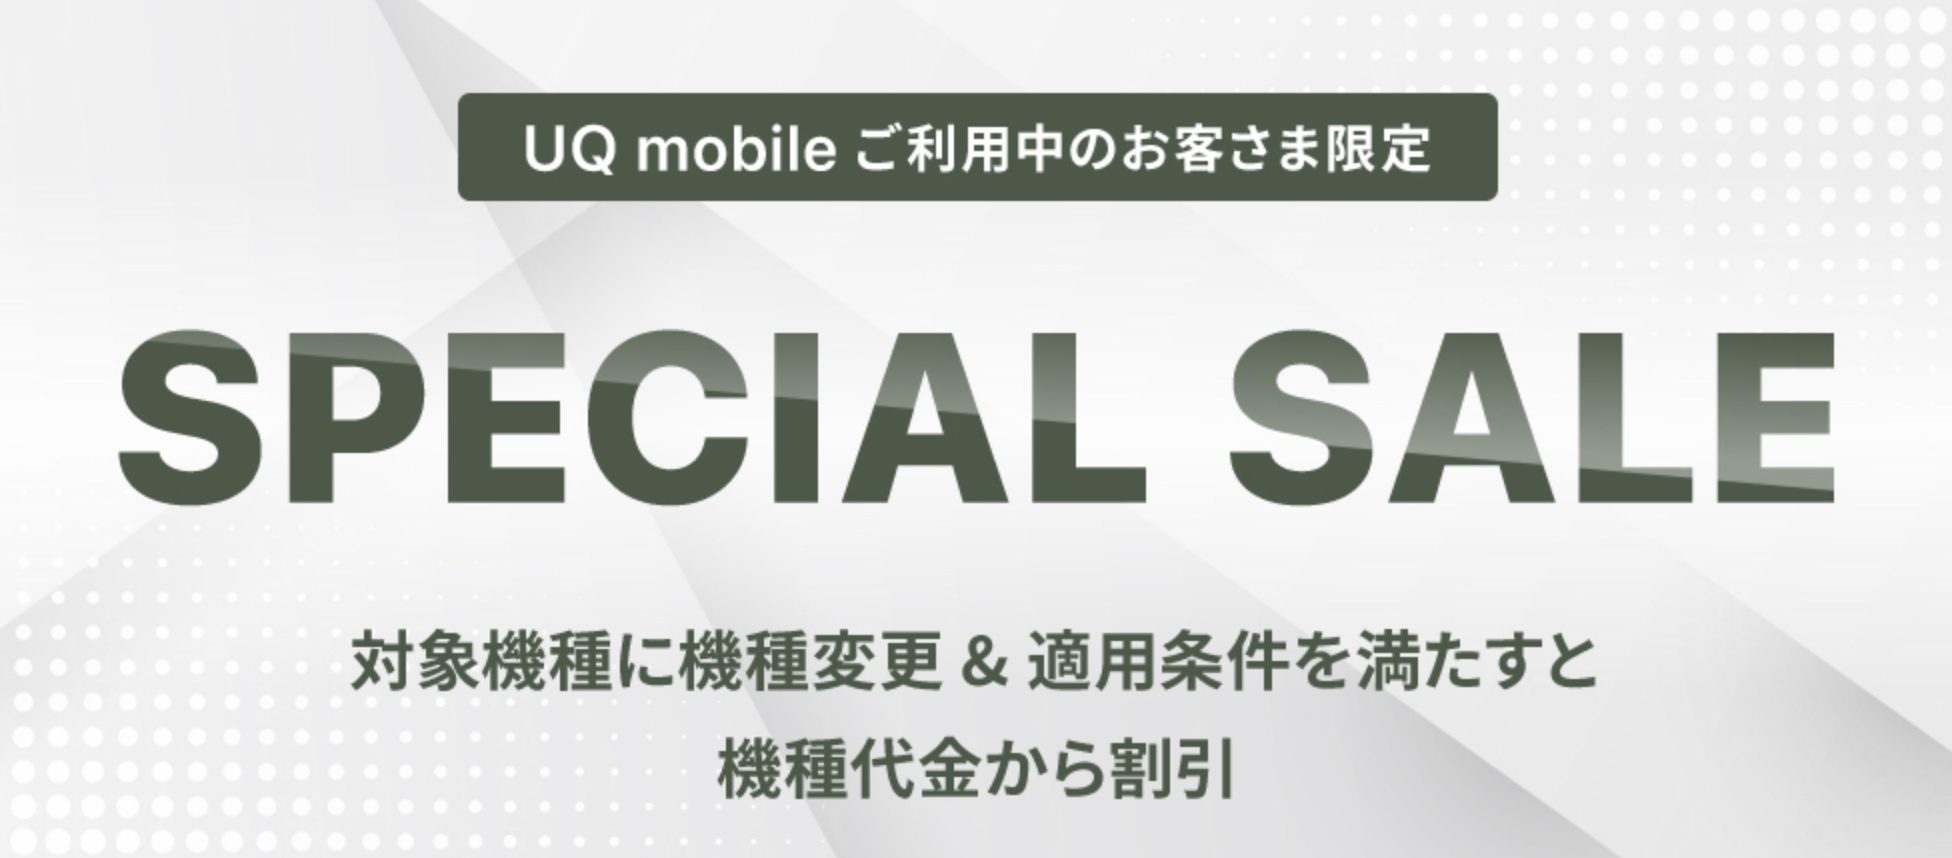 UQ mobile オンラインショップ限定スペシャルセール